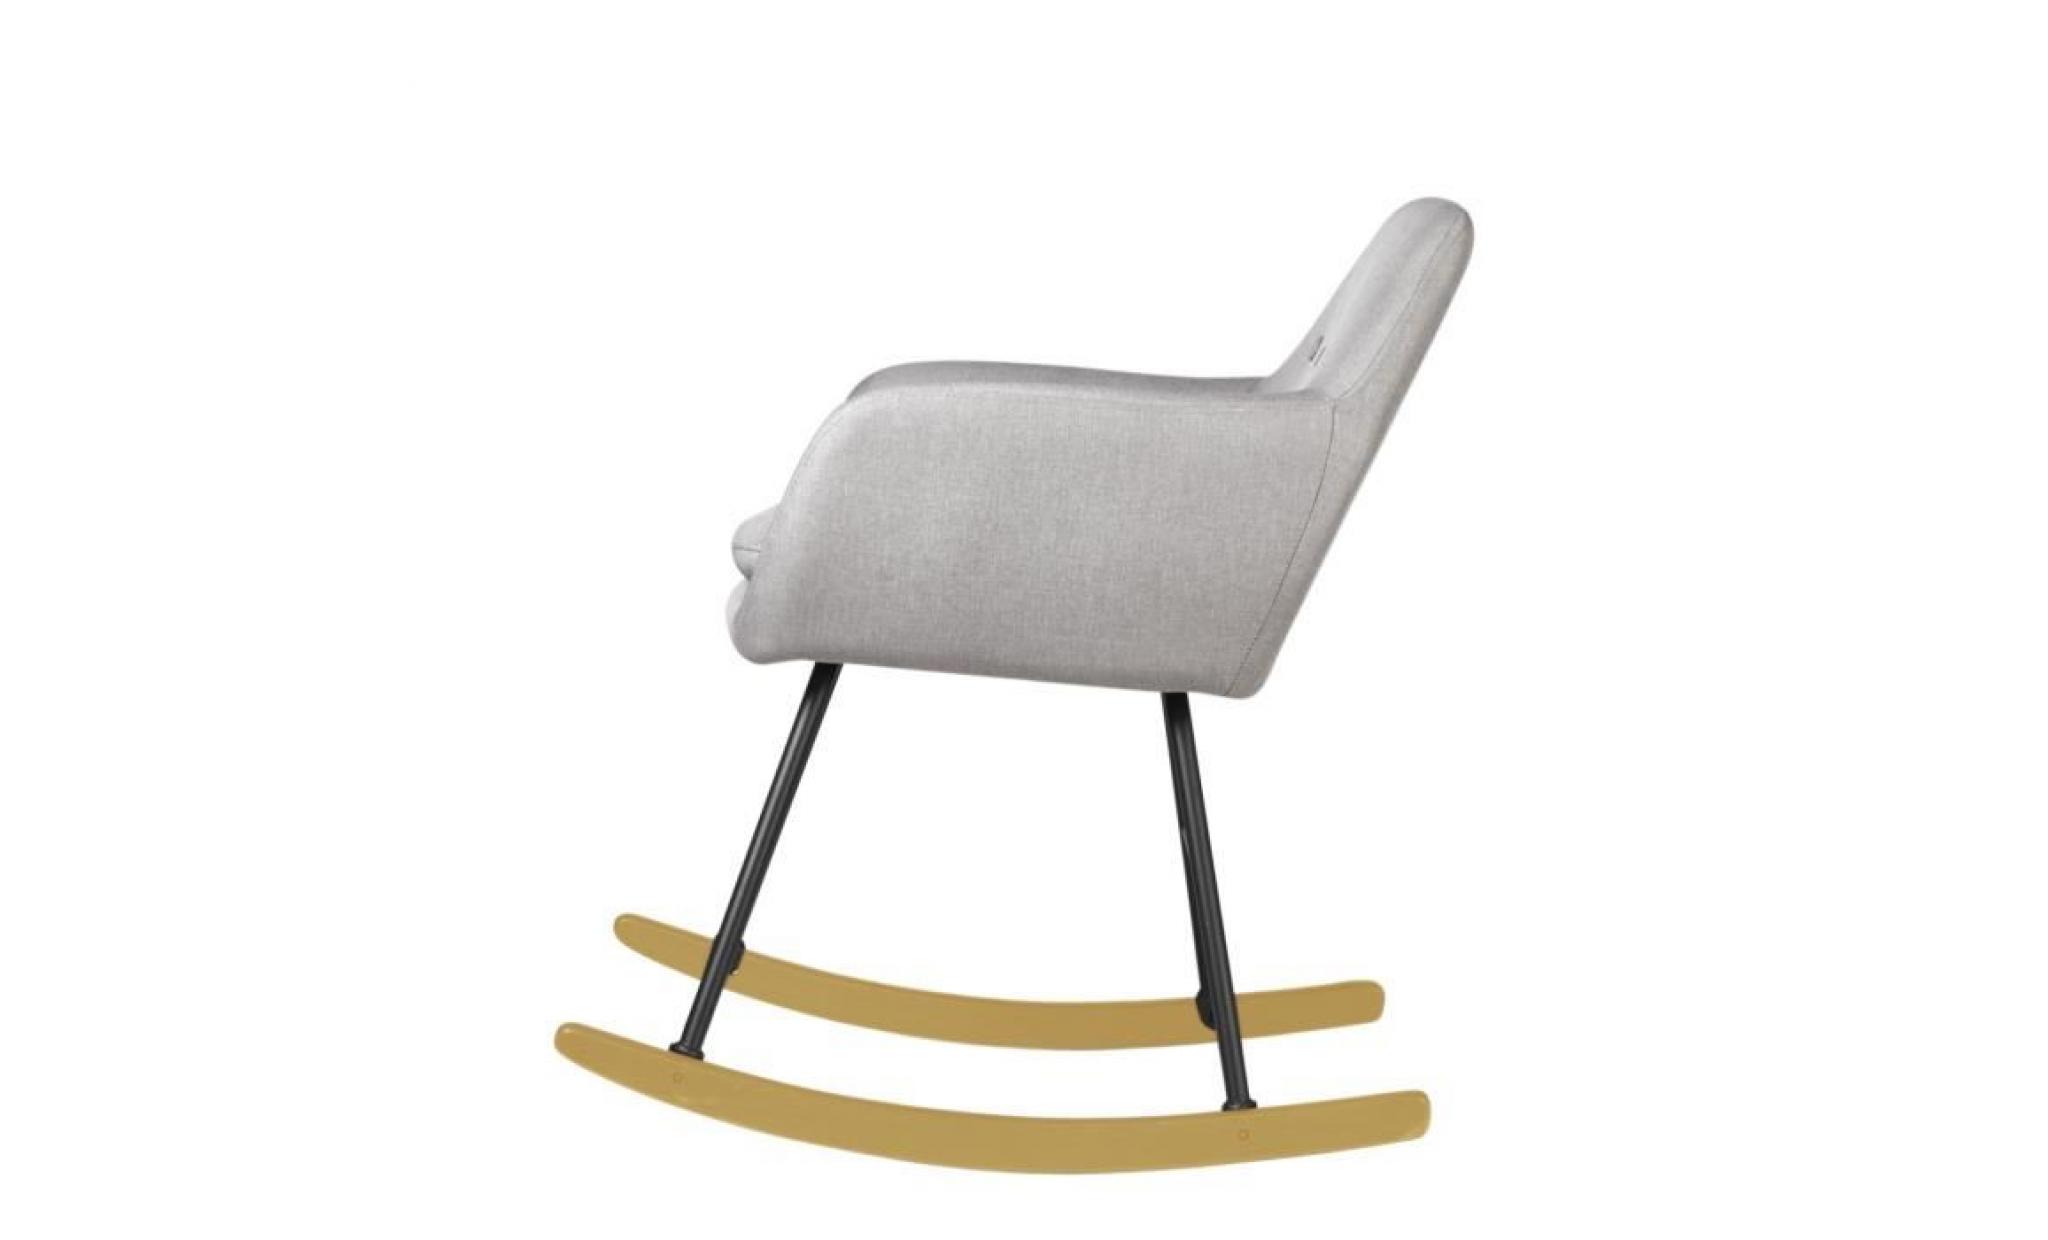 jens fauteuil à bascule rocking chair   tissu effet lin gris clair   scandinave   l 63 x p 75 cm pas cher